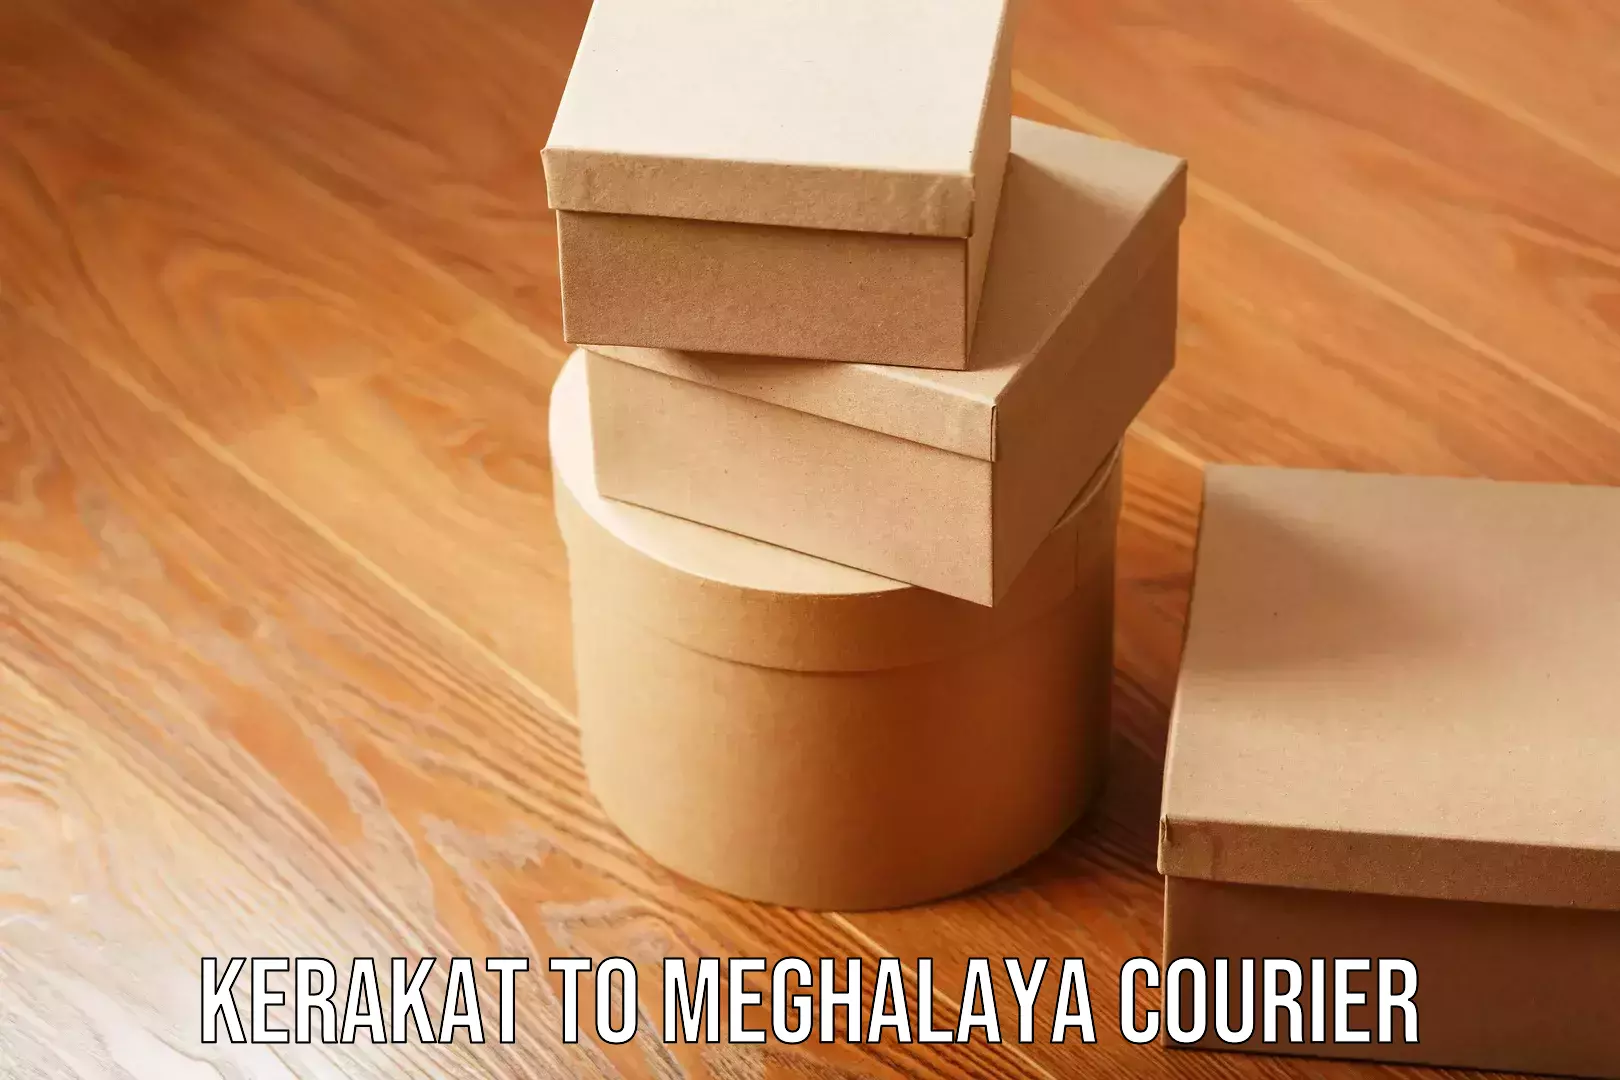 Safe furniture moving Kerakat to Meghalaya